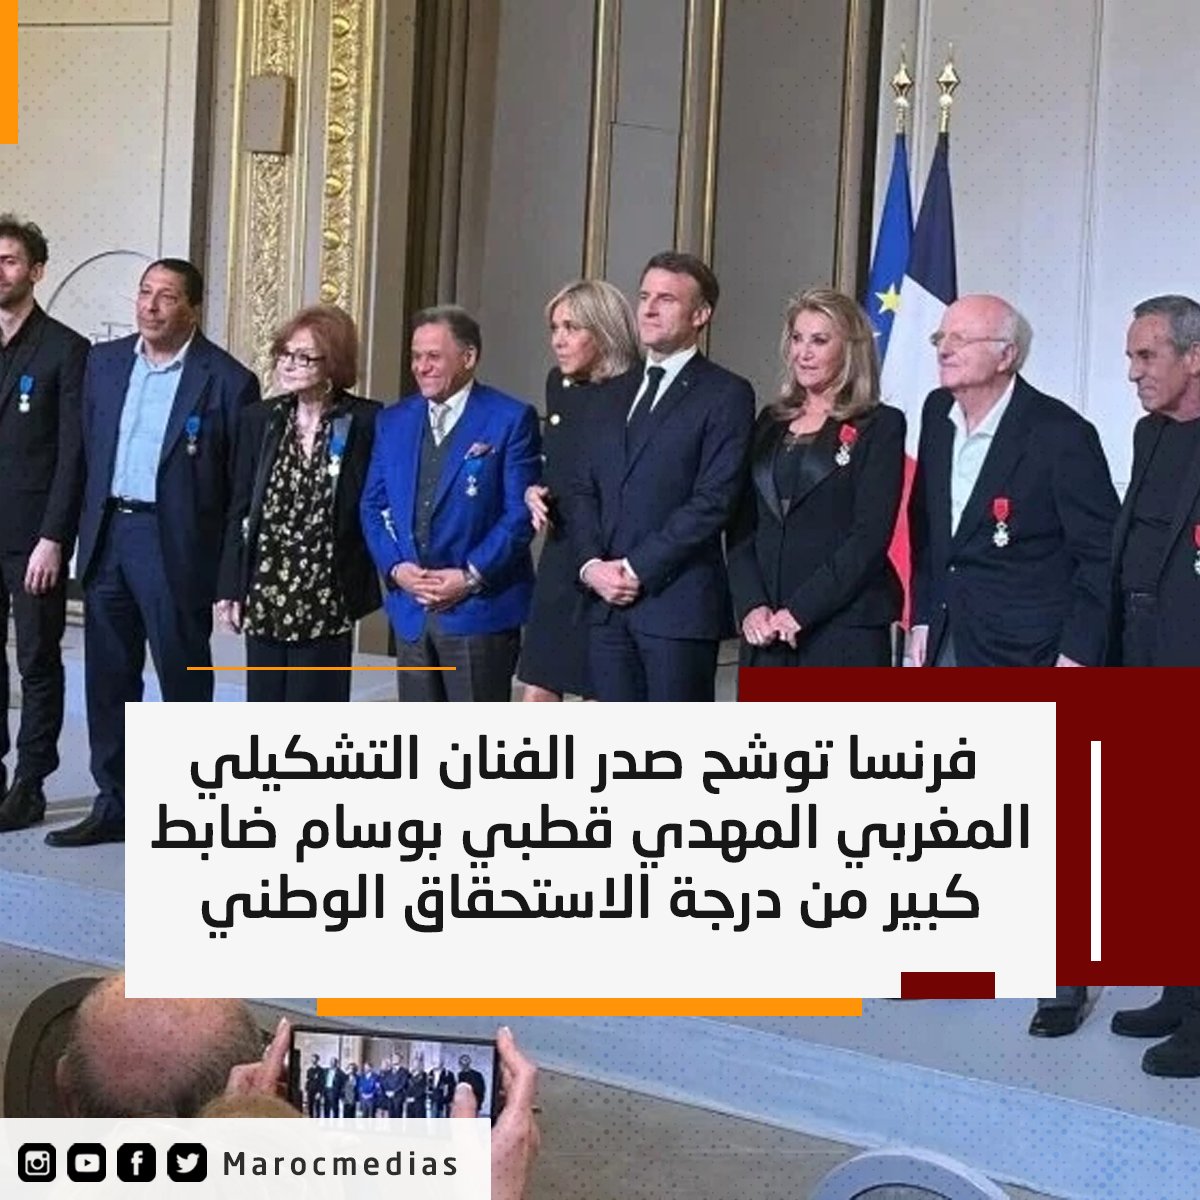 فرنسا توشح صدر الفنان التشكيلي المغربي المهدي قطبي بوسام ضابط كبير من درجة الاستحقاق الوطني
التفاصيل :marocmedias.com/125945